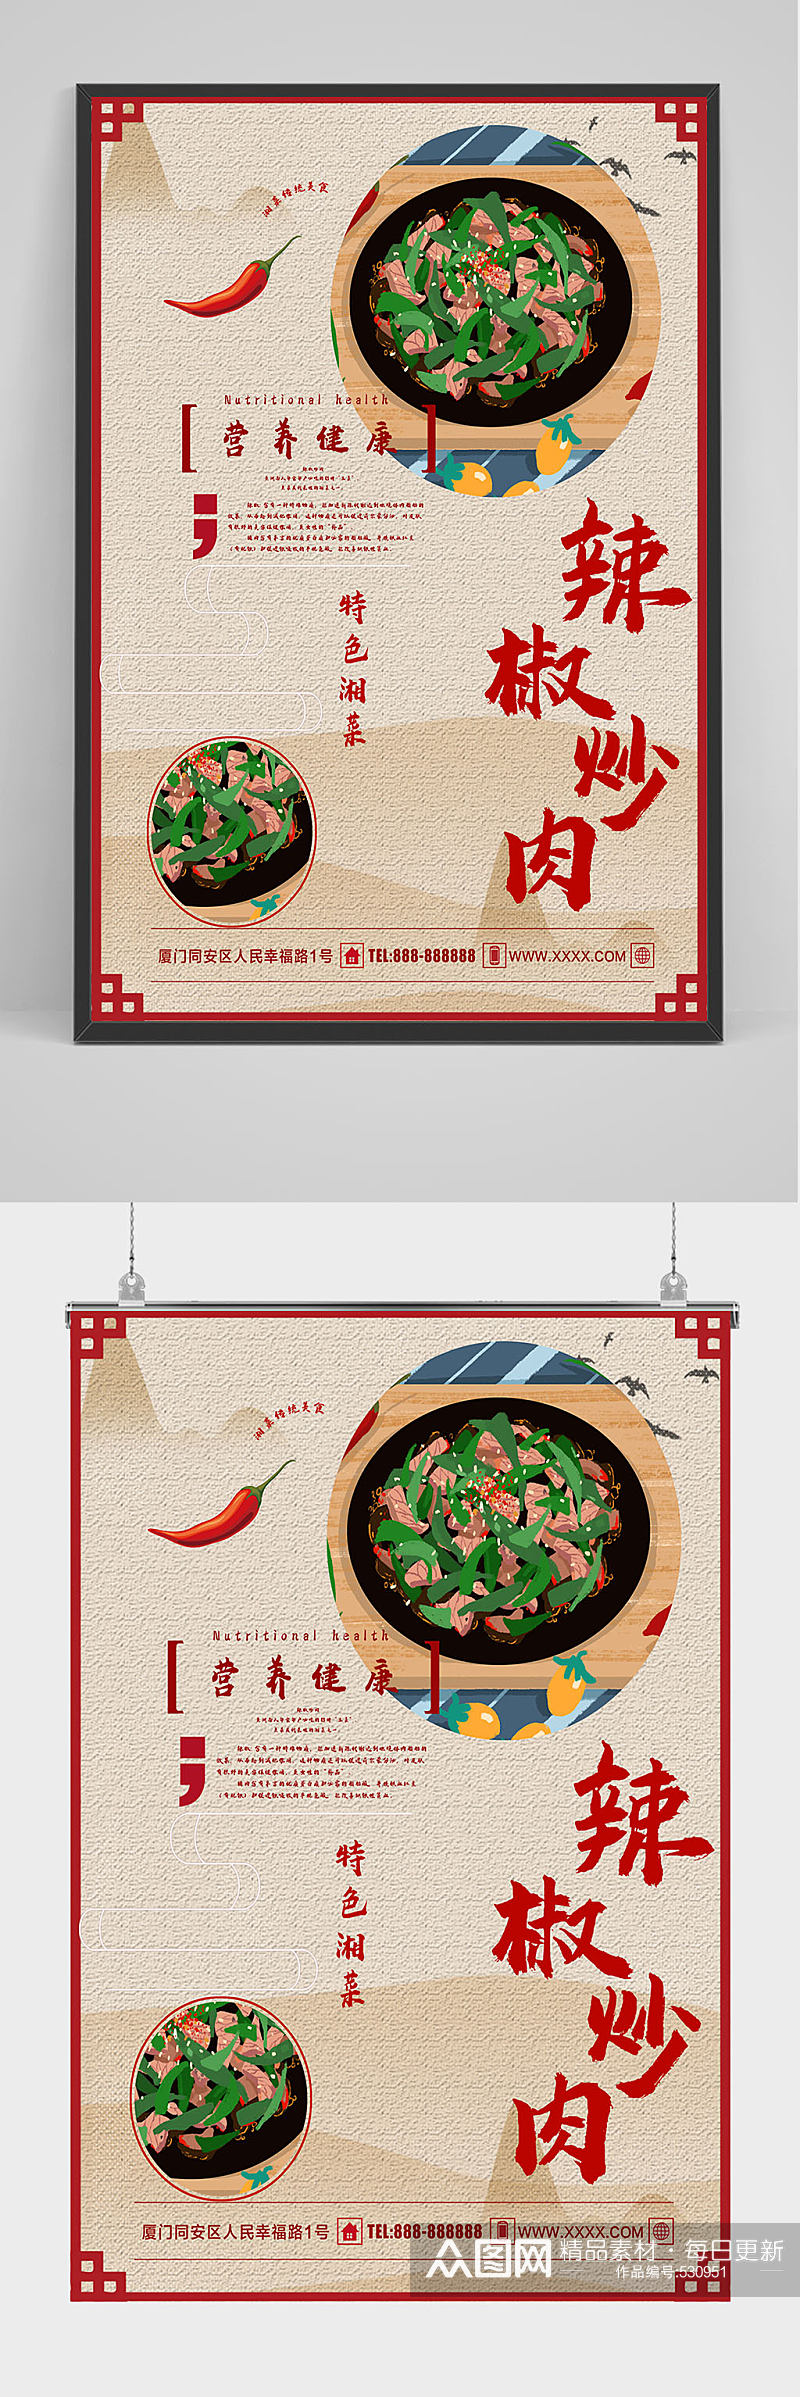 精品中国风辣椒炒肉海报设计素材